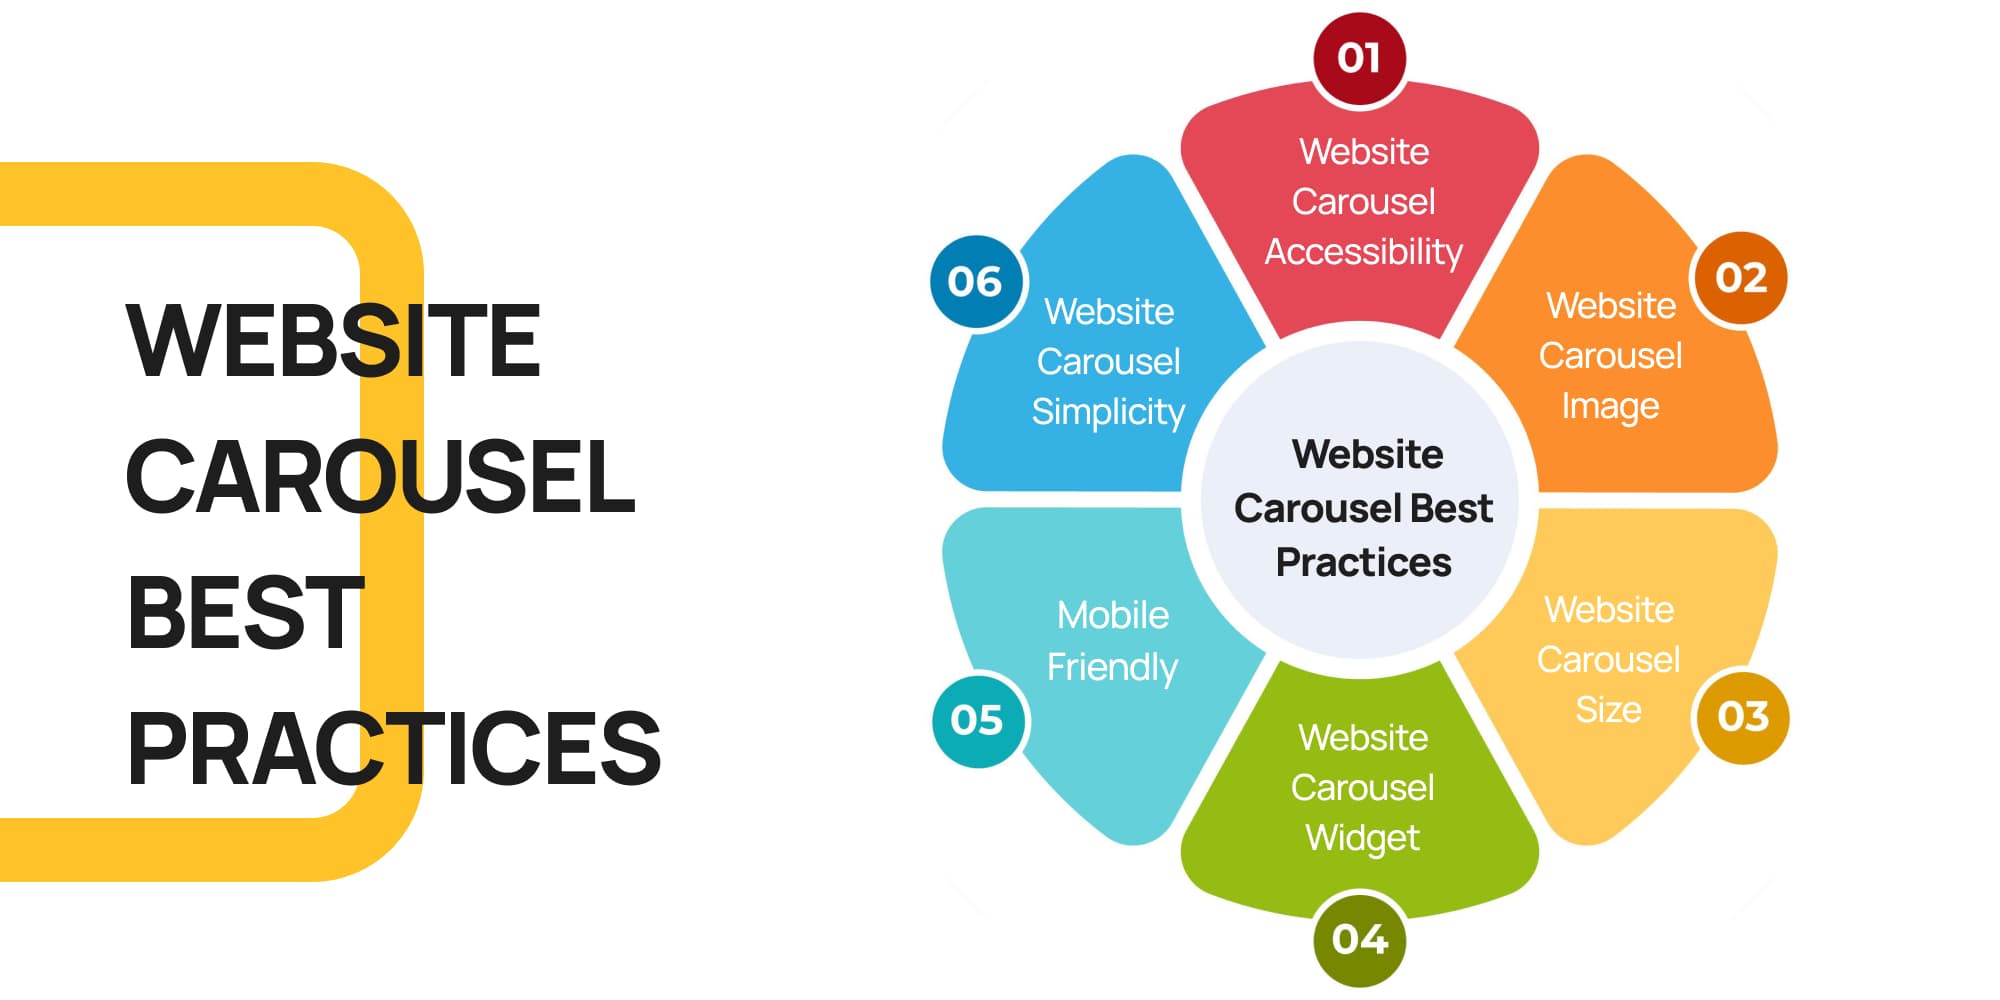 Quick Tips: Website Carousel Best Practices